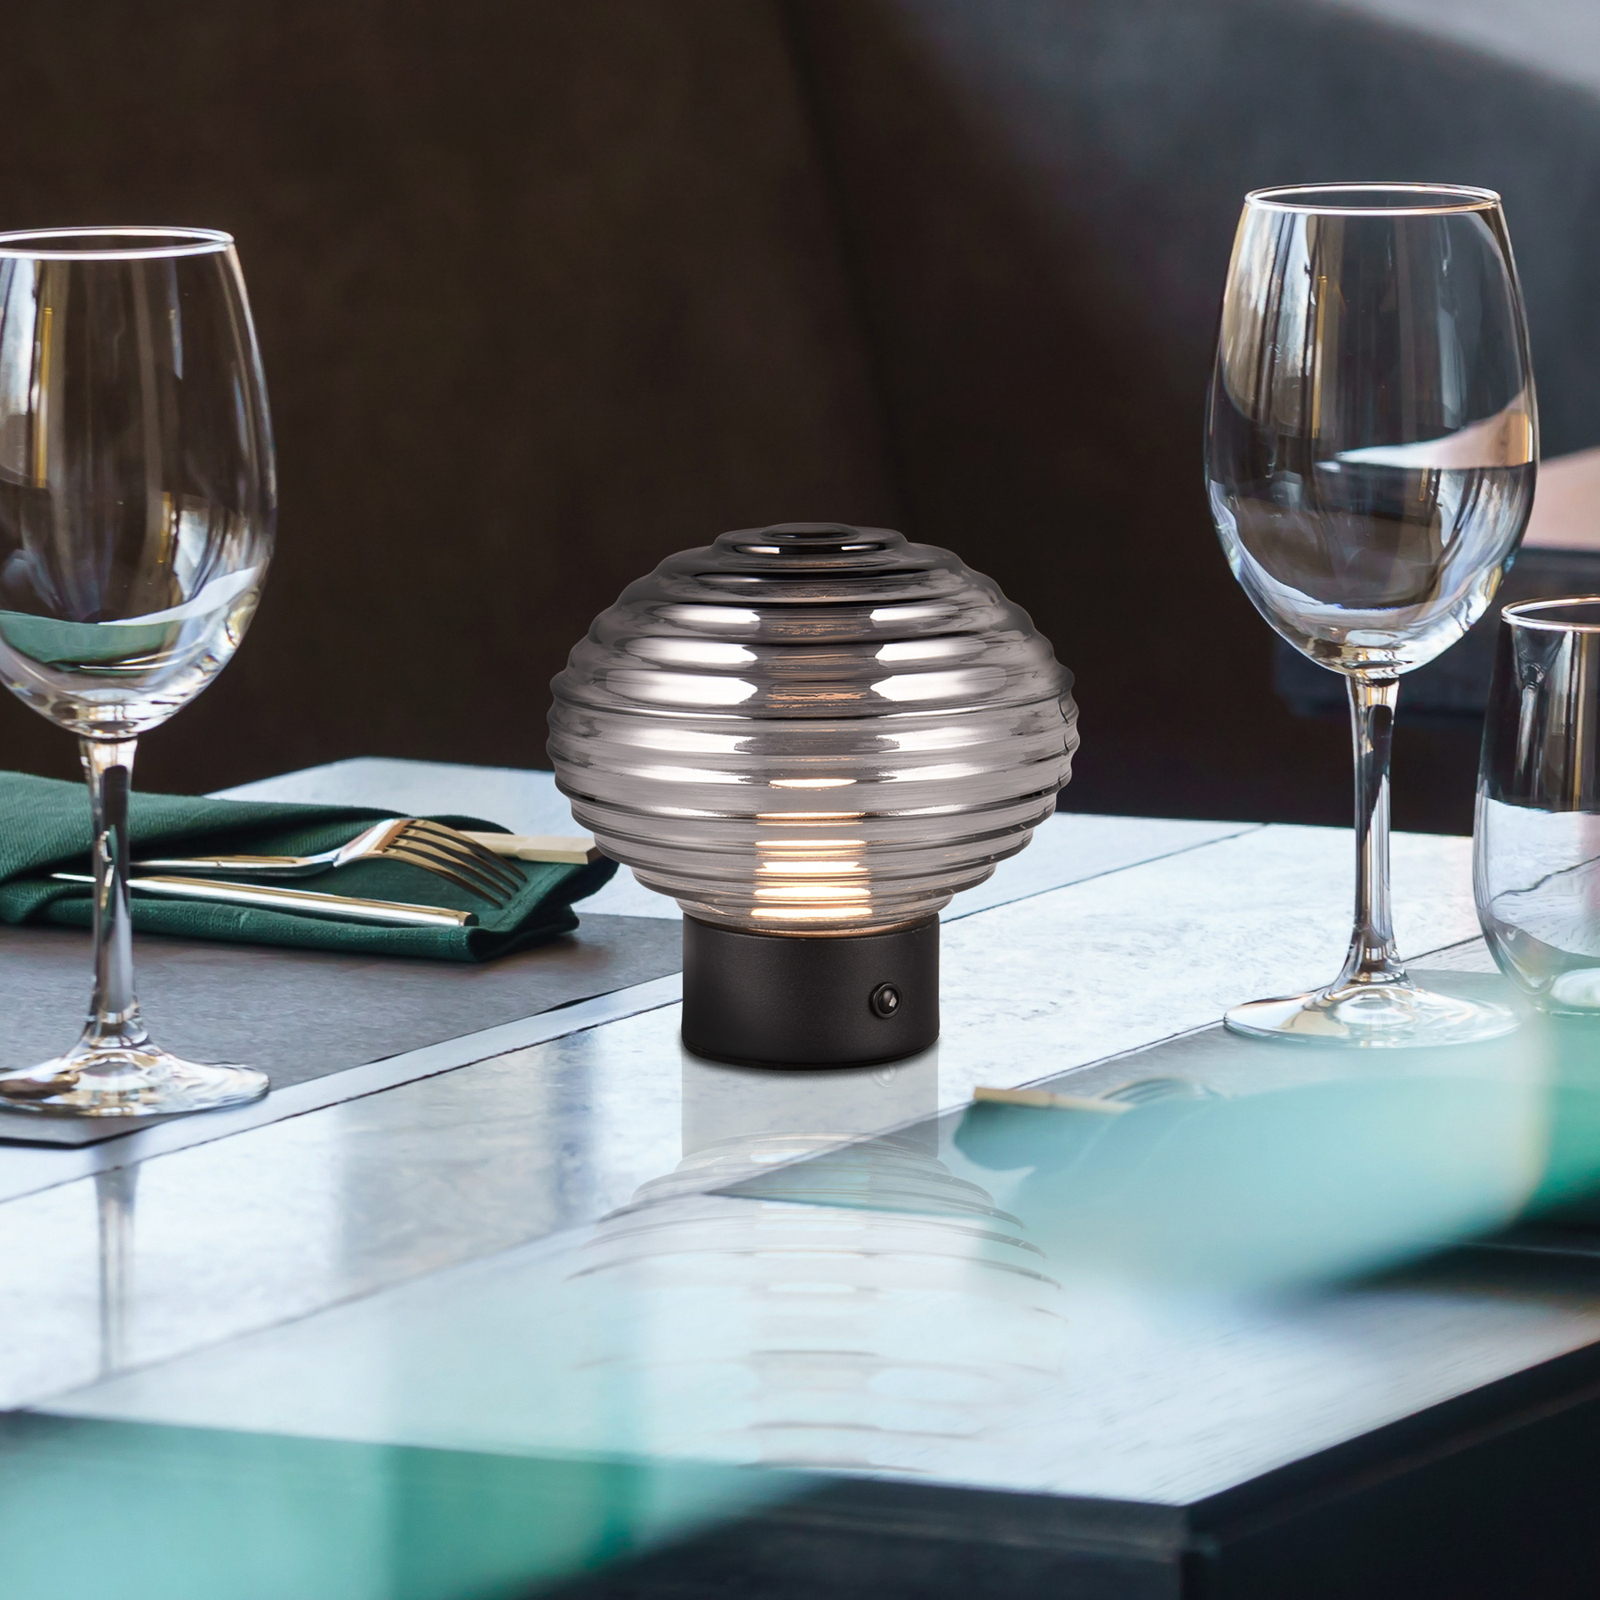 LED-Akku-Tischlampe Earl, schwarz/rauch, Höhe 14,5 cm, Glas